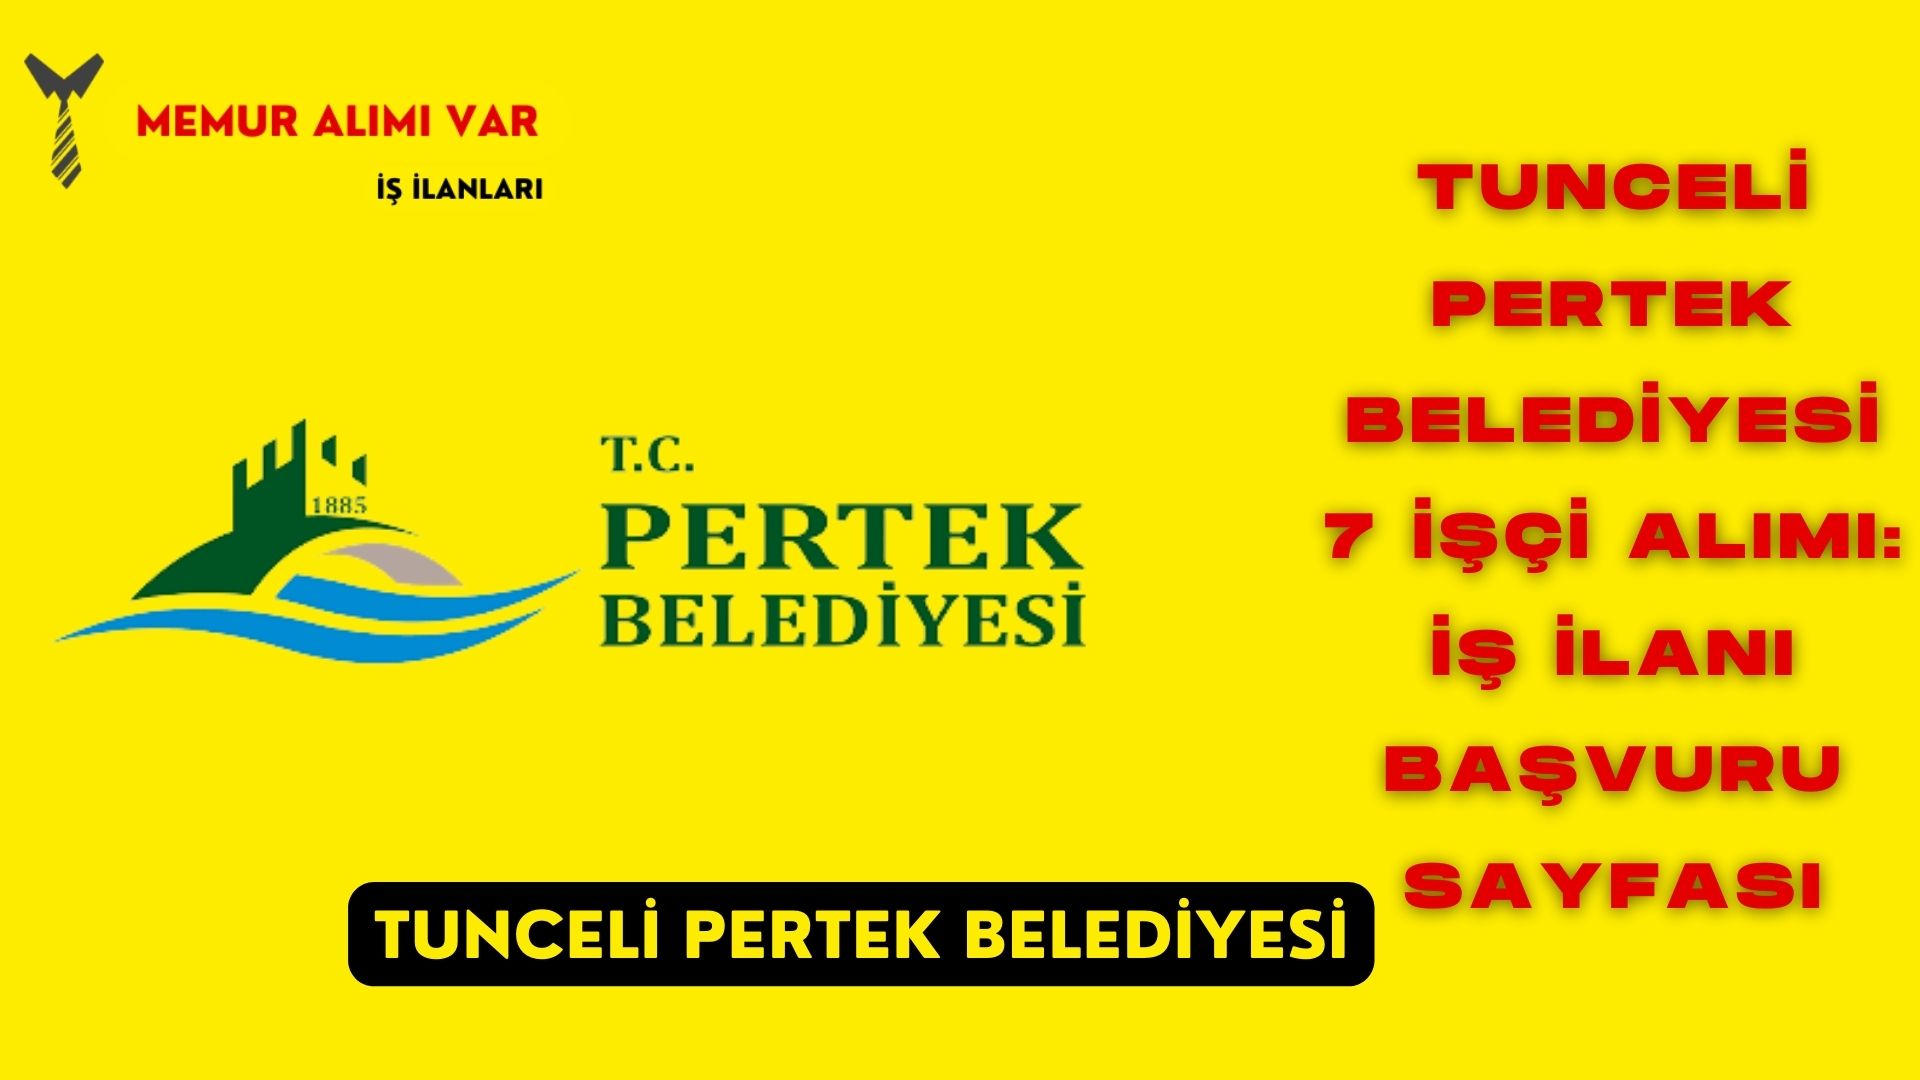 Tunceli Pertek Belediyesi 7 İşçi Alımı: İş İlanı Başvuru Sayfası